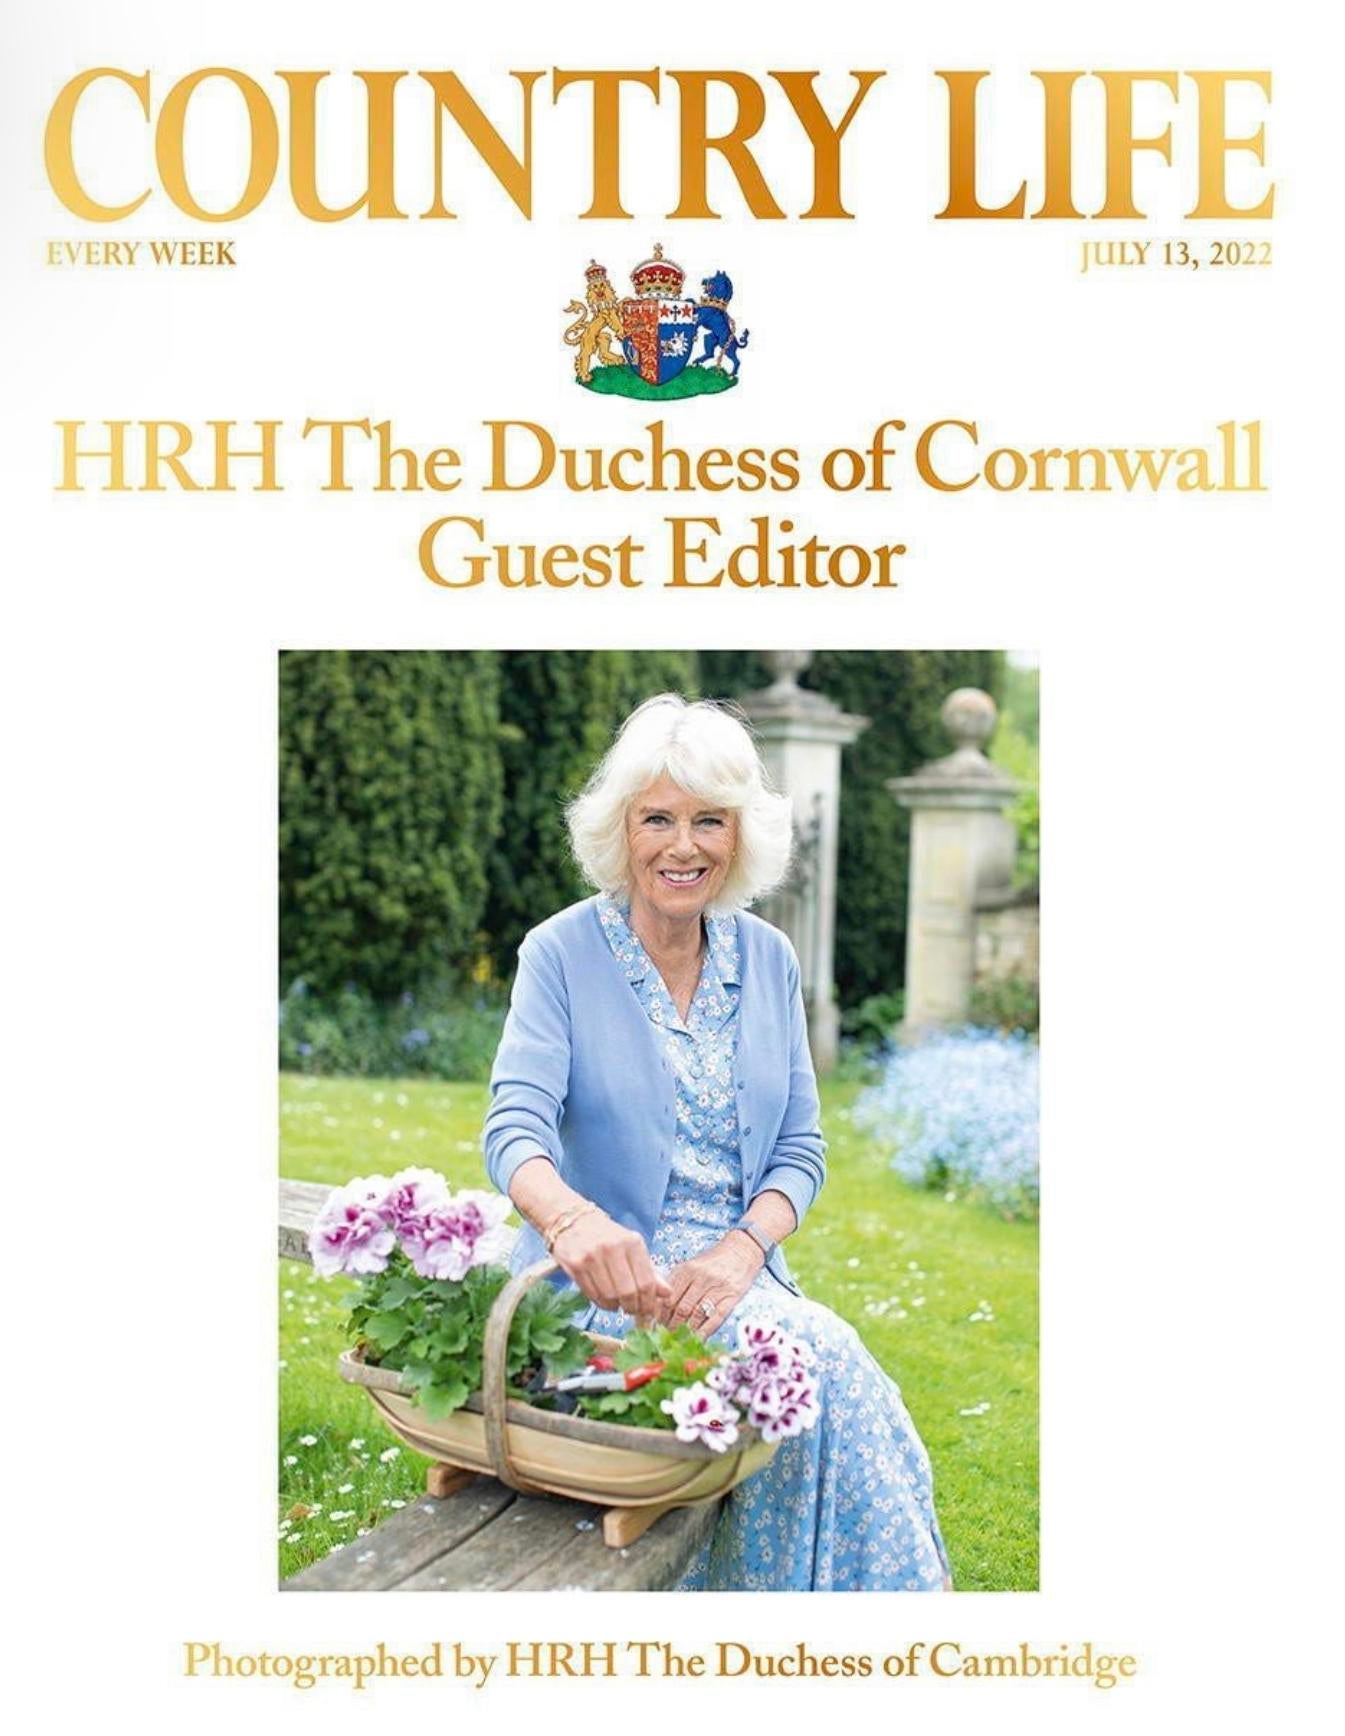 Кейт Миддлтон сделал новый портрет герцогини Камиллы для издания Country Life